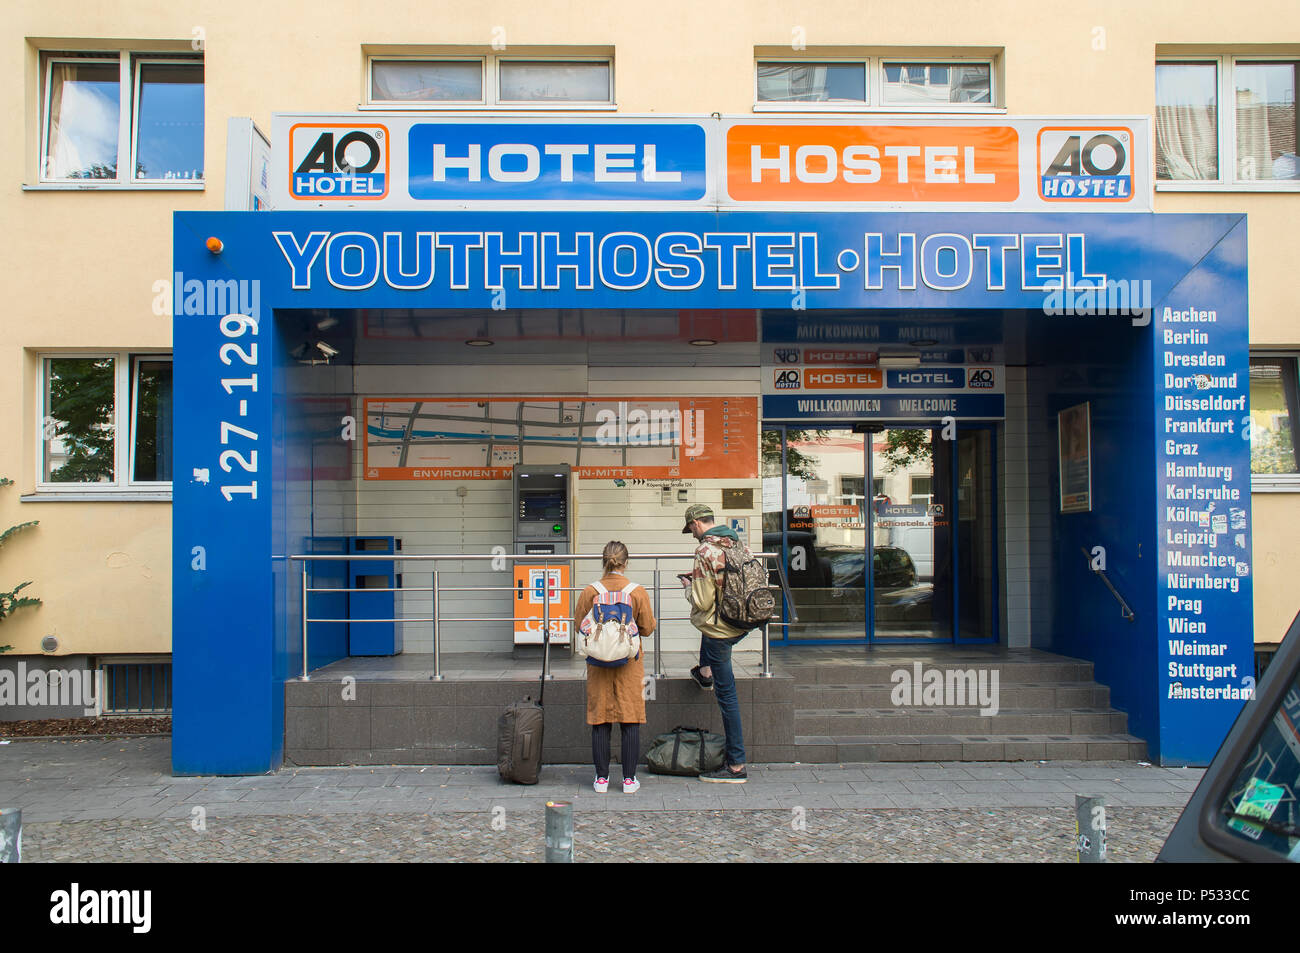 The AO Hotel / Hostel in Koepenicker Strasse in Berlin-Mitte Stock Photo